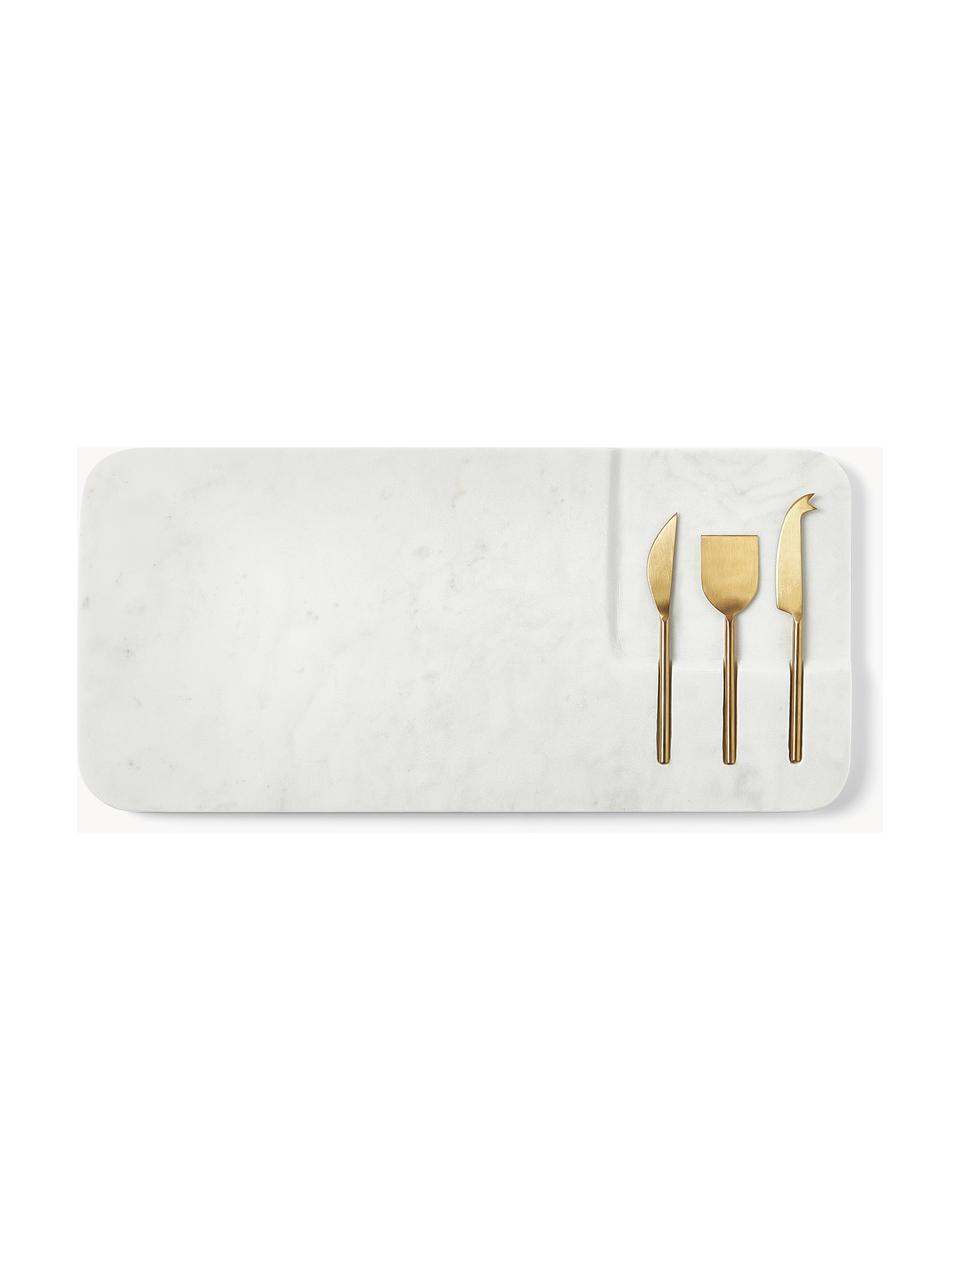 Taca do serwowania sera Jaya, 4 elem., Biały, marmurowy, odcienie złotego, D 48 x S 22 cm